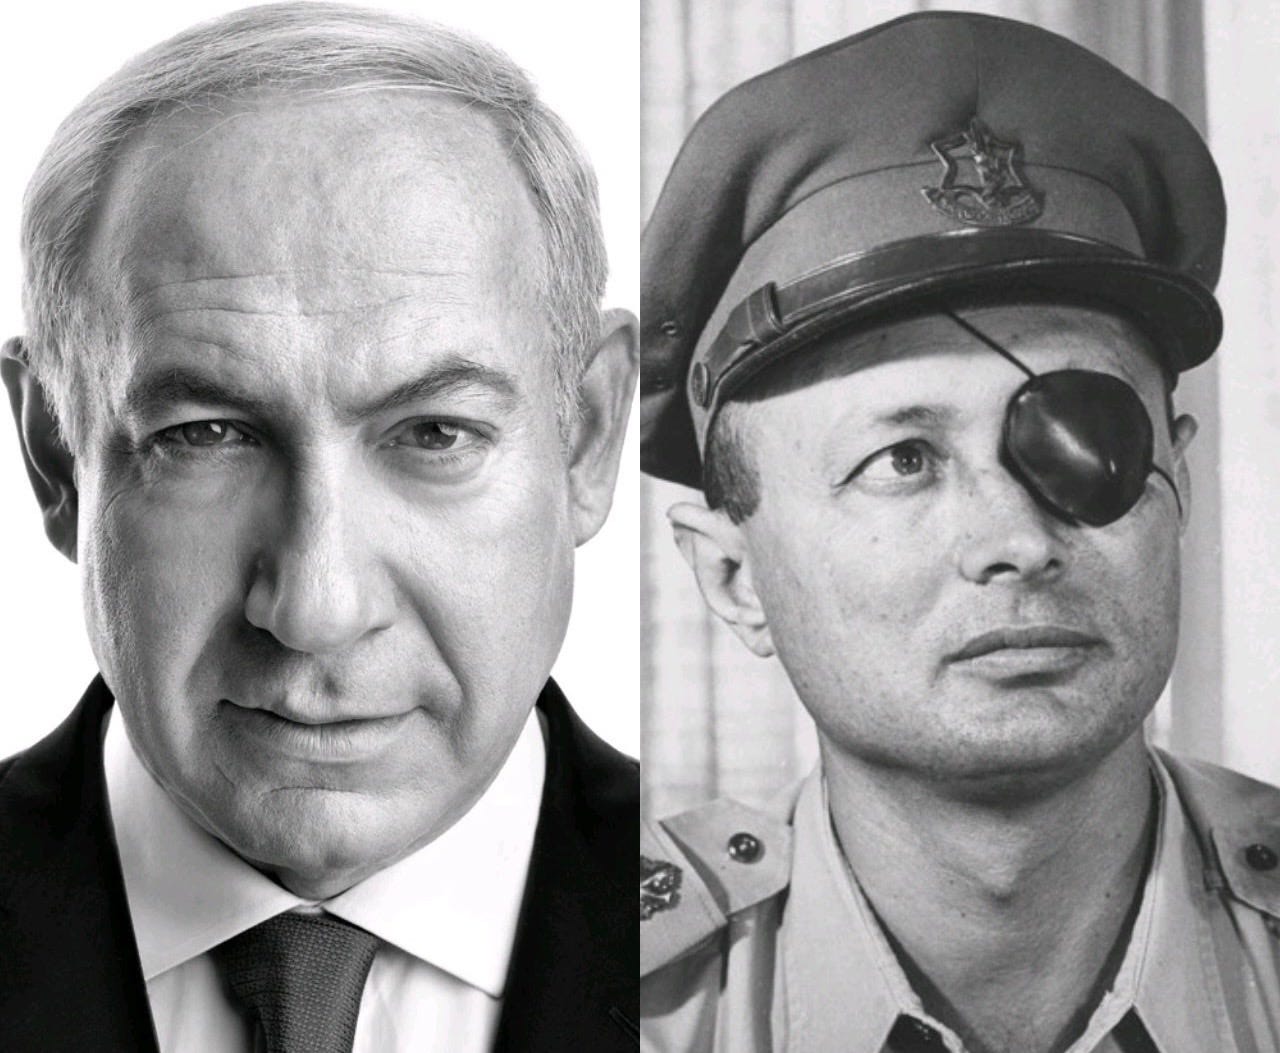 Moshe Dayan and Benjamin Netanyahu — Profiles in Leadership